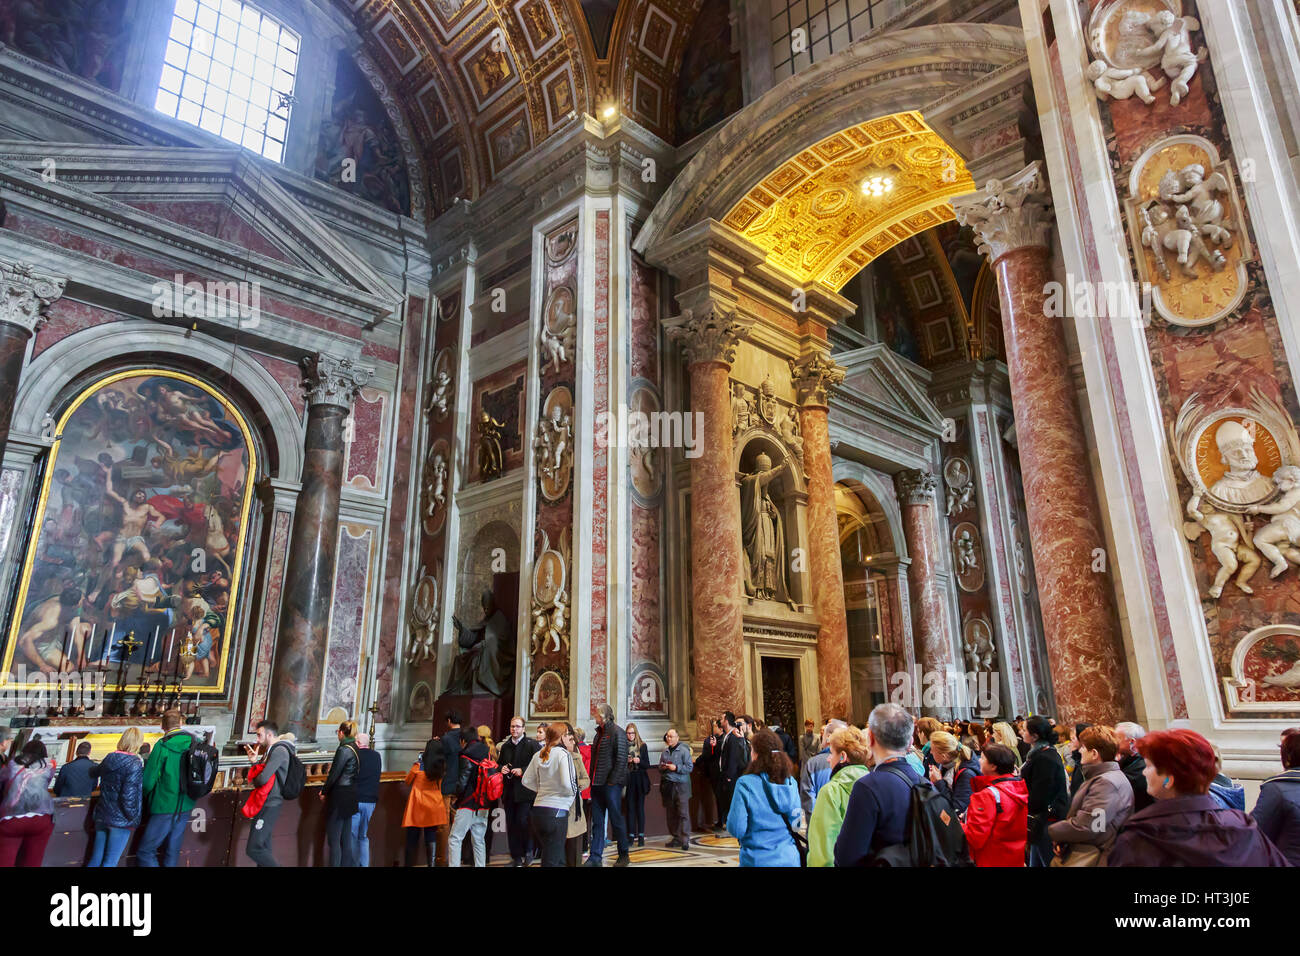 Détail à l'intérieur de la Basilique de St Pierre, Vatican, Rome, Italie Banque D'Images